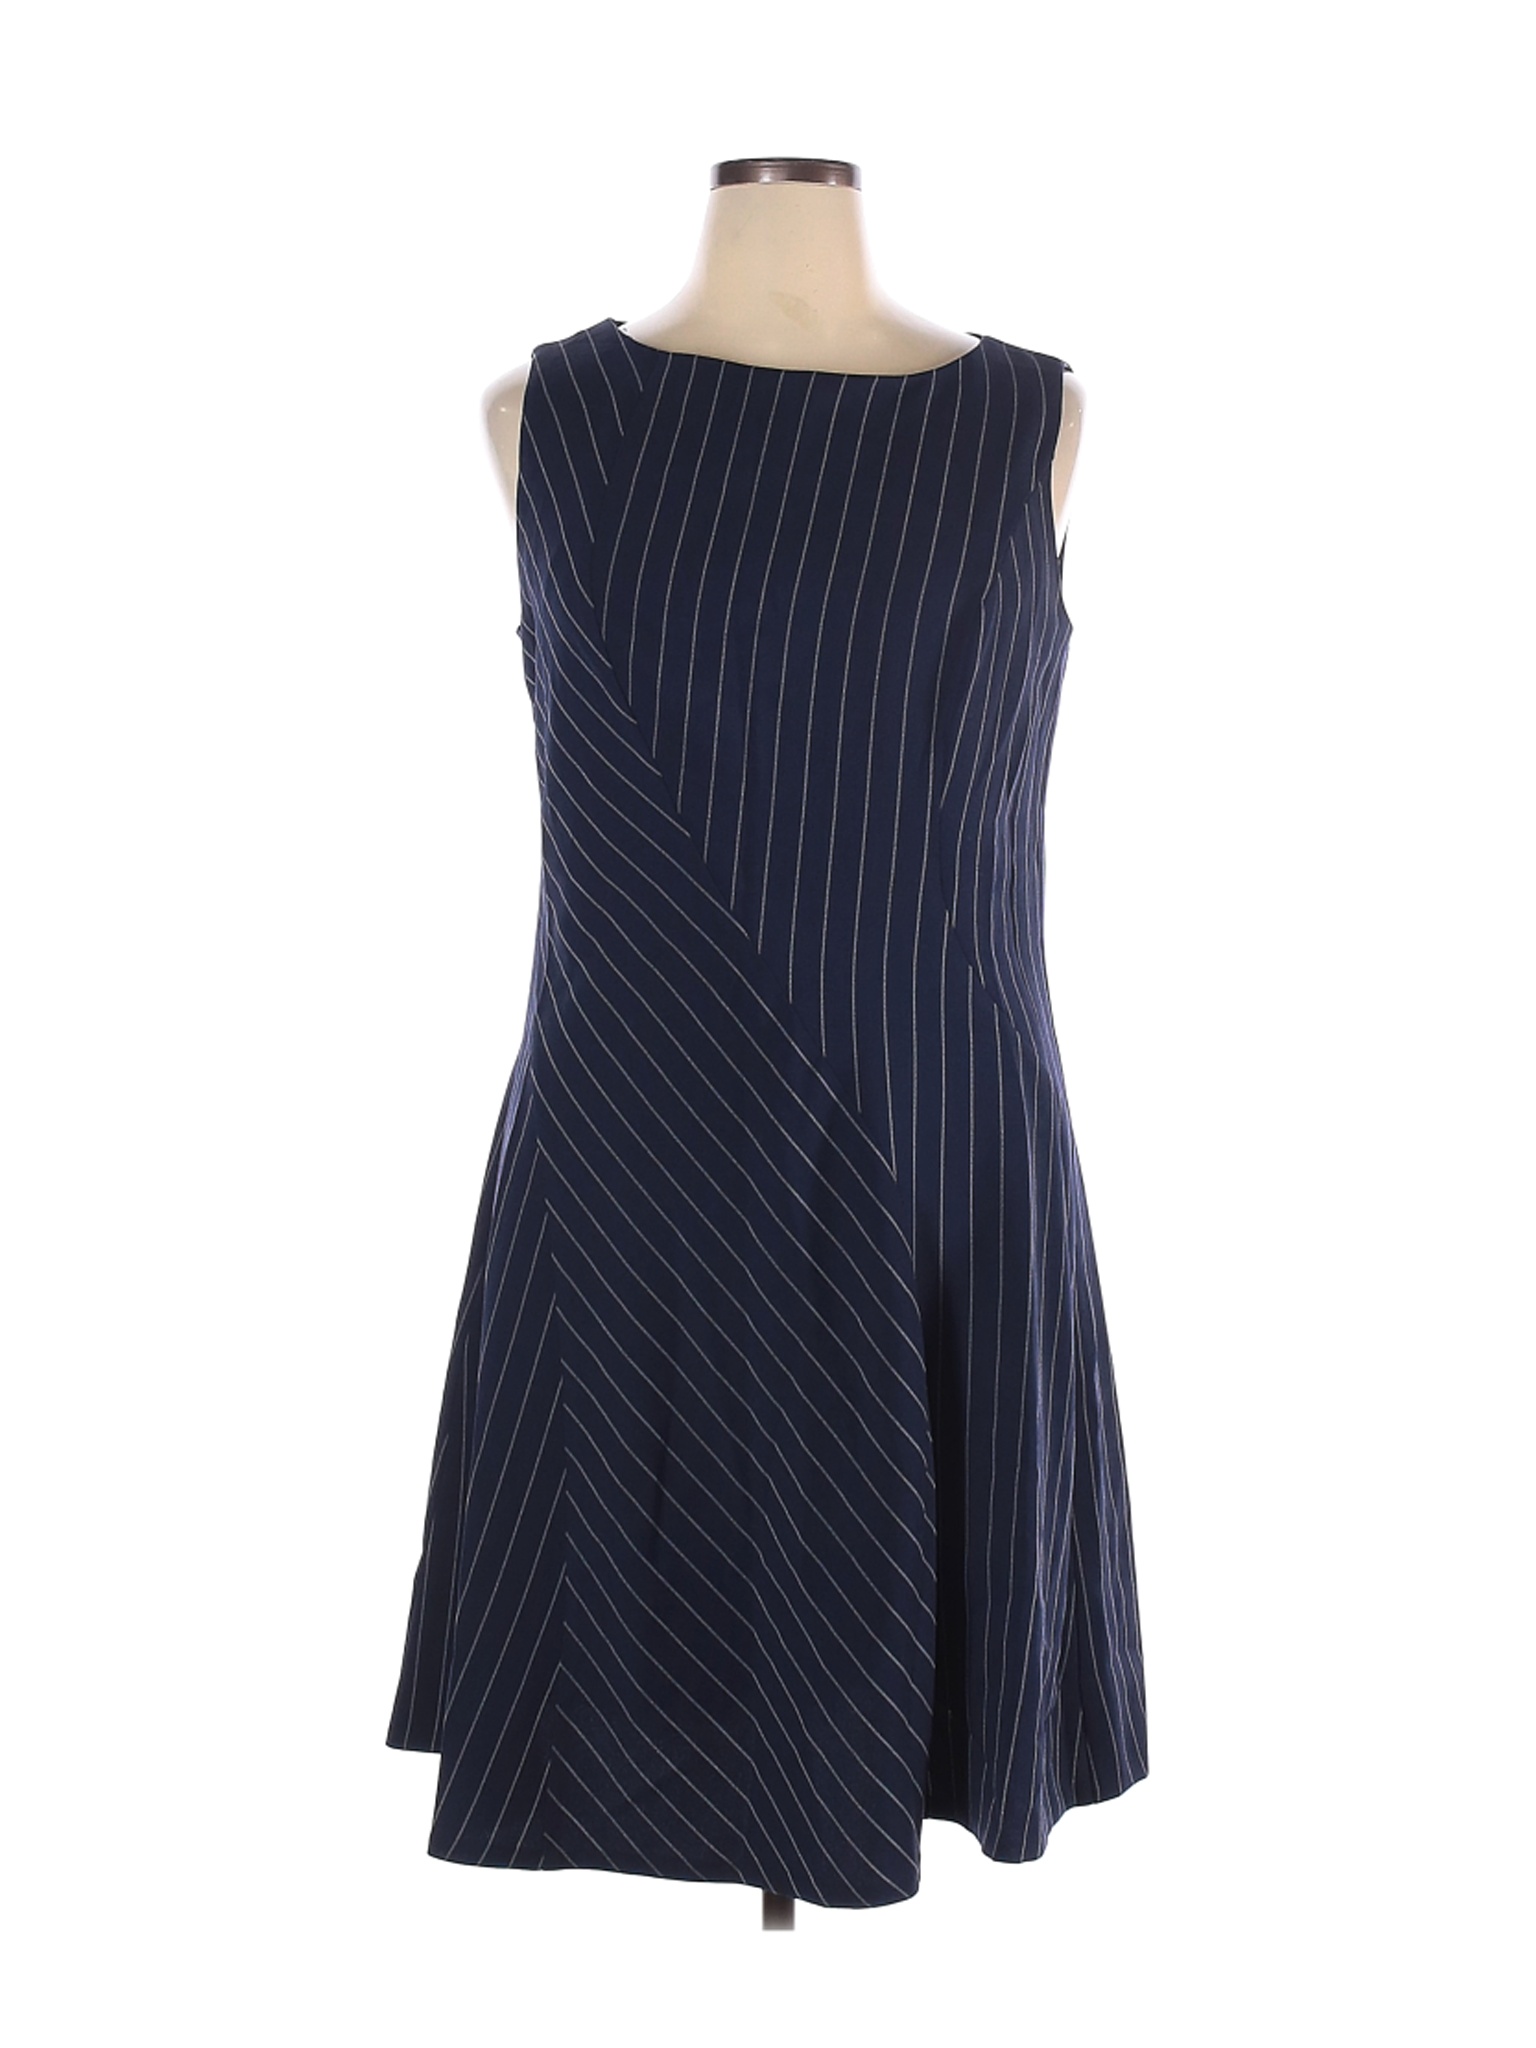 DKNY Women Blue Casual Dress 14 | eBay